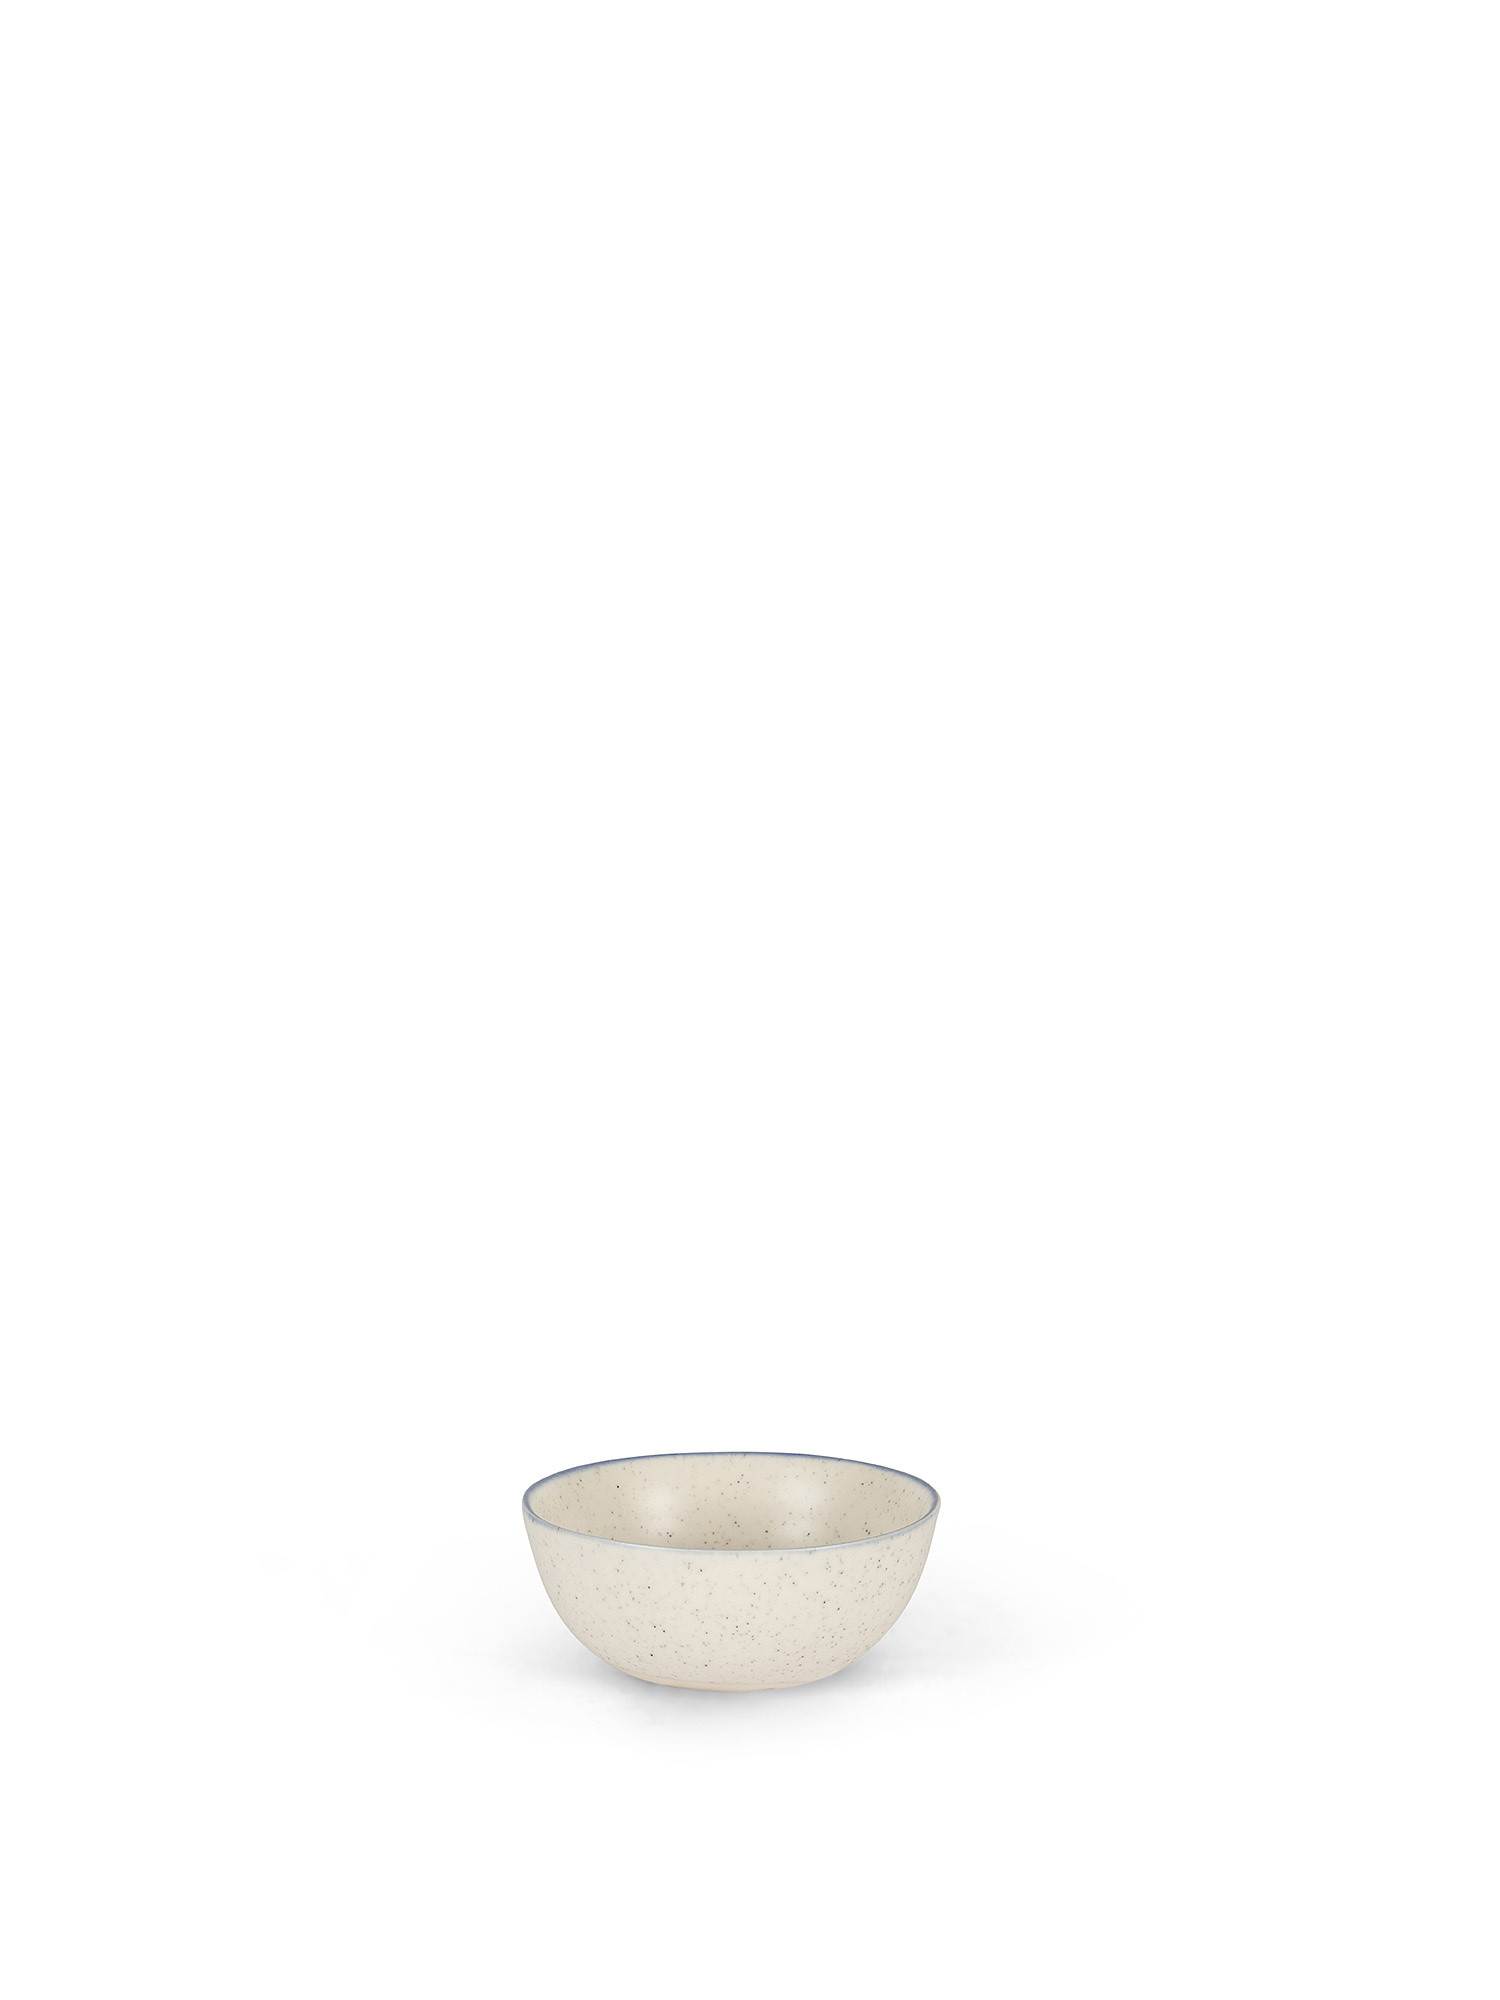 Coppetta ceramica con bordino, Bianco, large image number 0